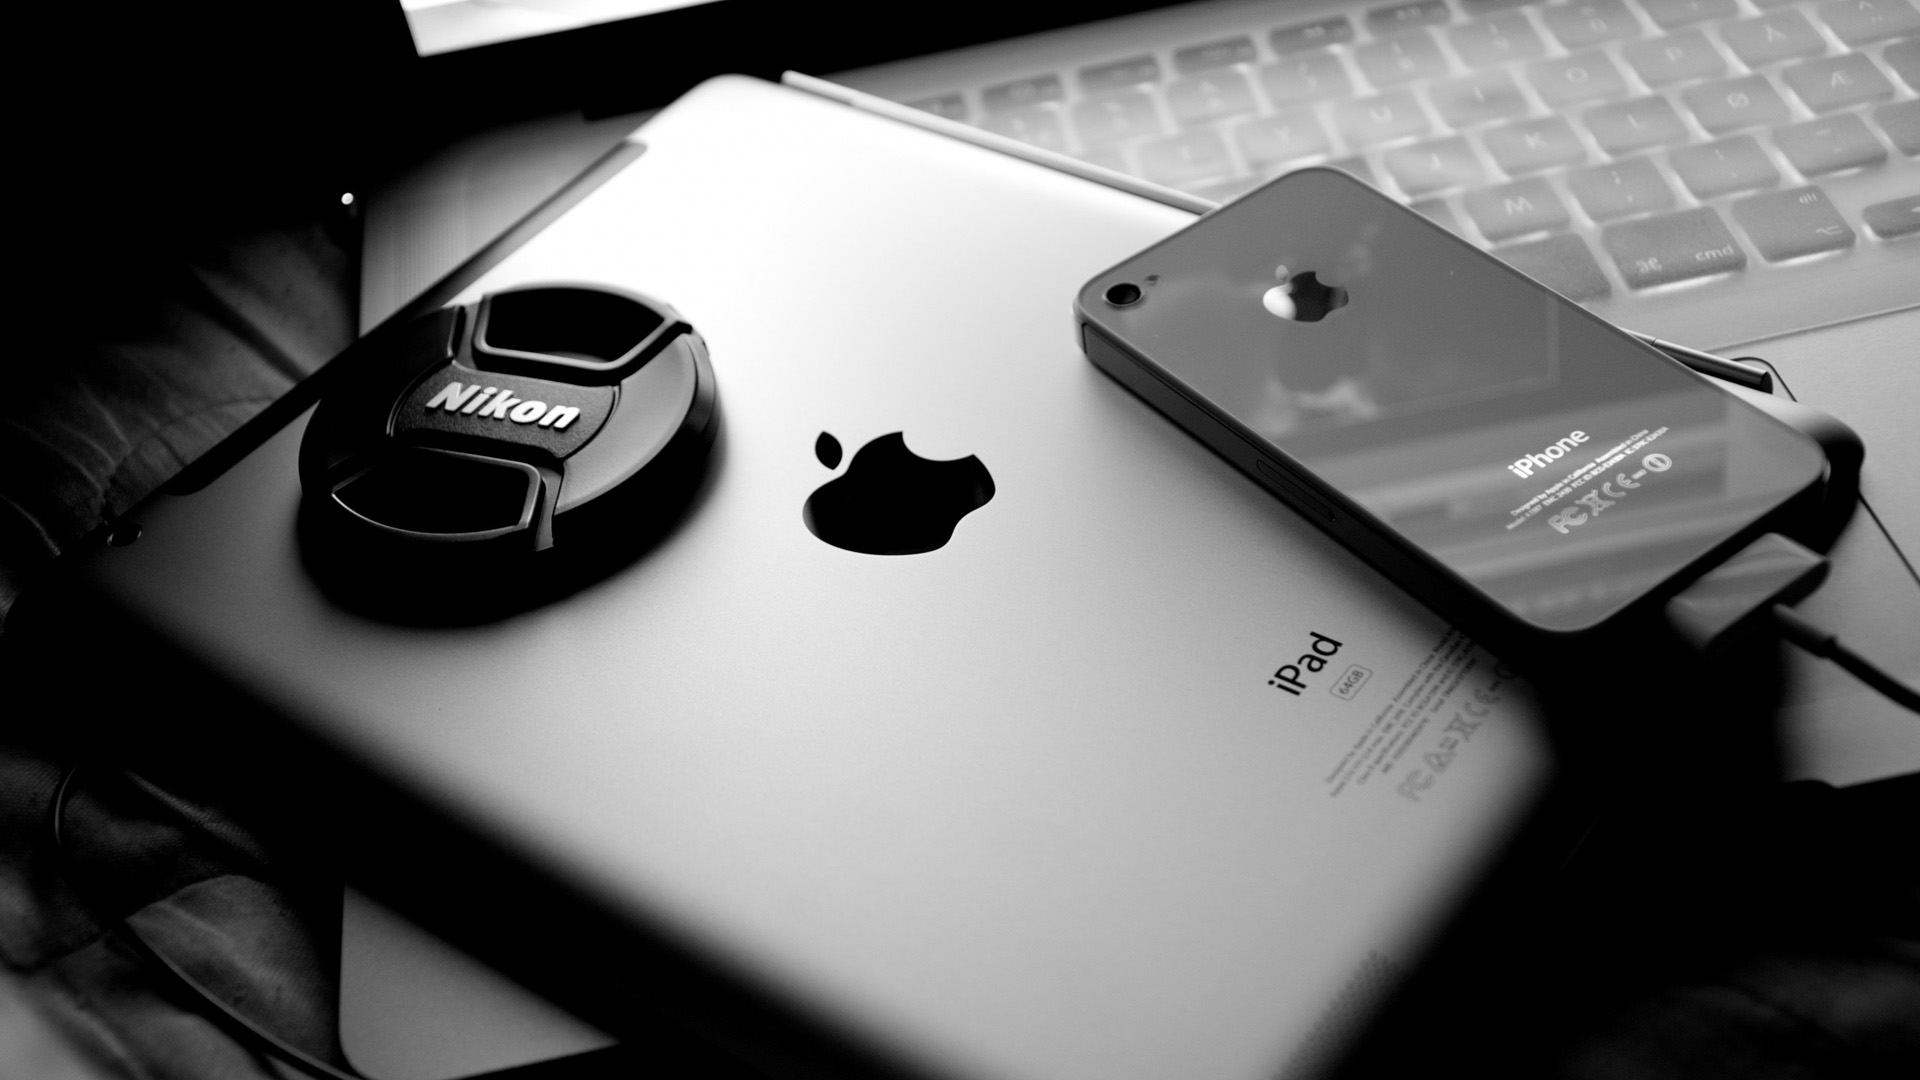 fond d'écran hd pour mobile 1920x1080,blanc,noir,gadget,la technologie,téléphone intelligent